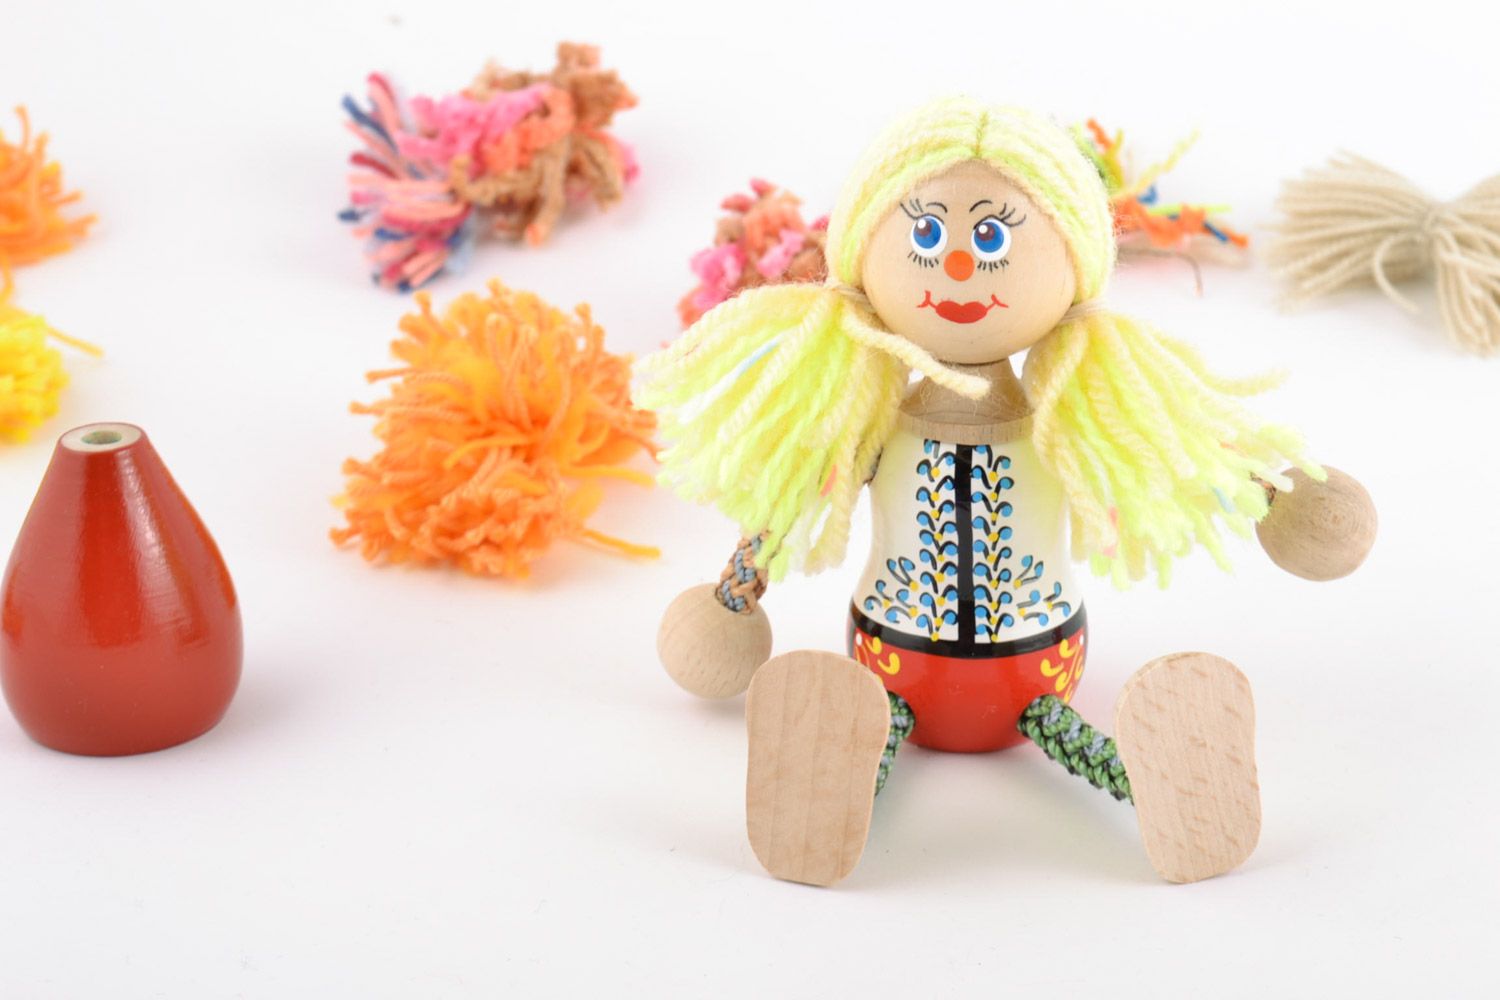 Jouet poupée en bois peint de couleurs décoratif original fait main pour enfant photo 1